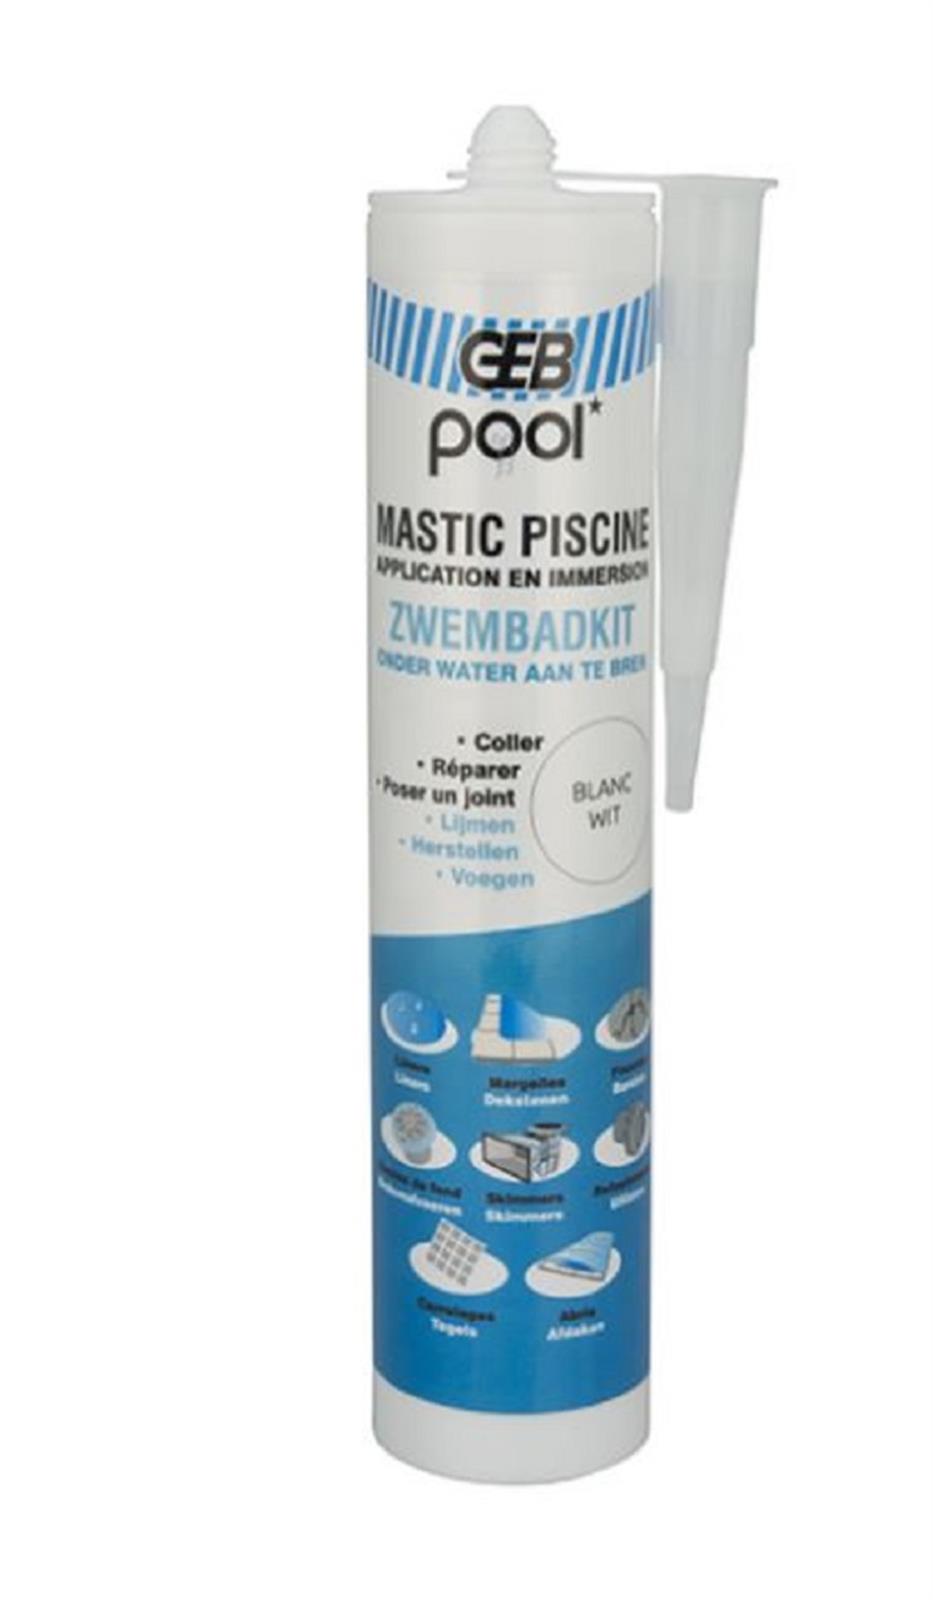 Mastic piscine qualité professionnelle - Cartouche de 290 ml - Coloris: blanc